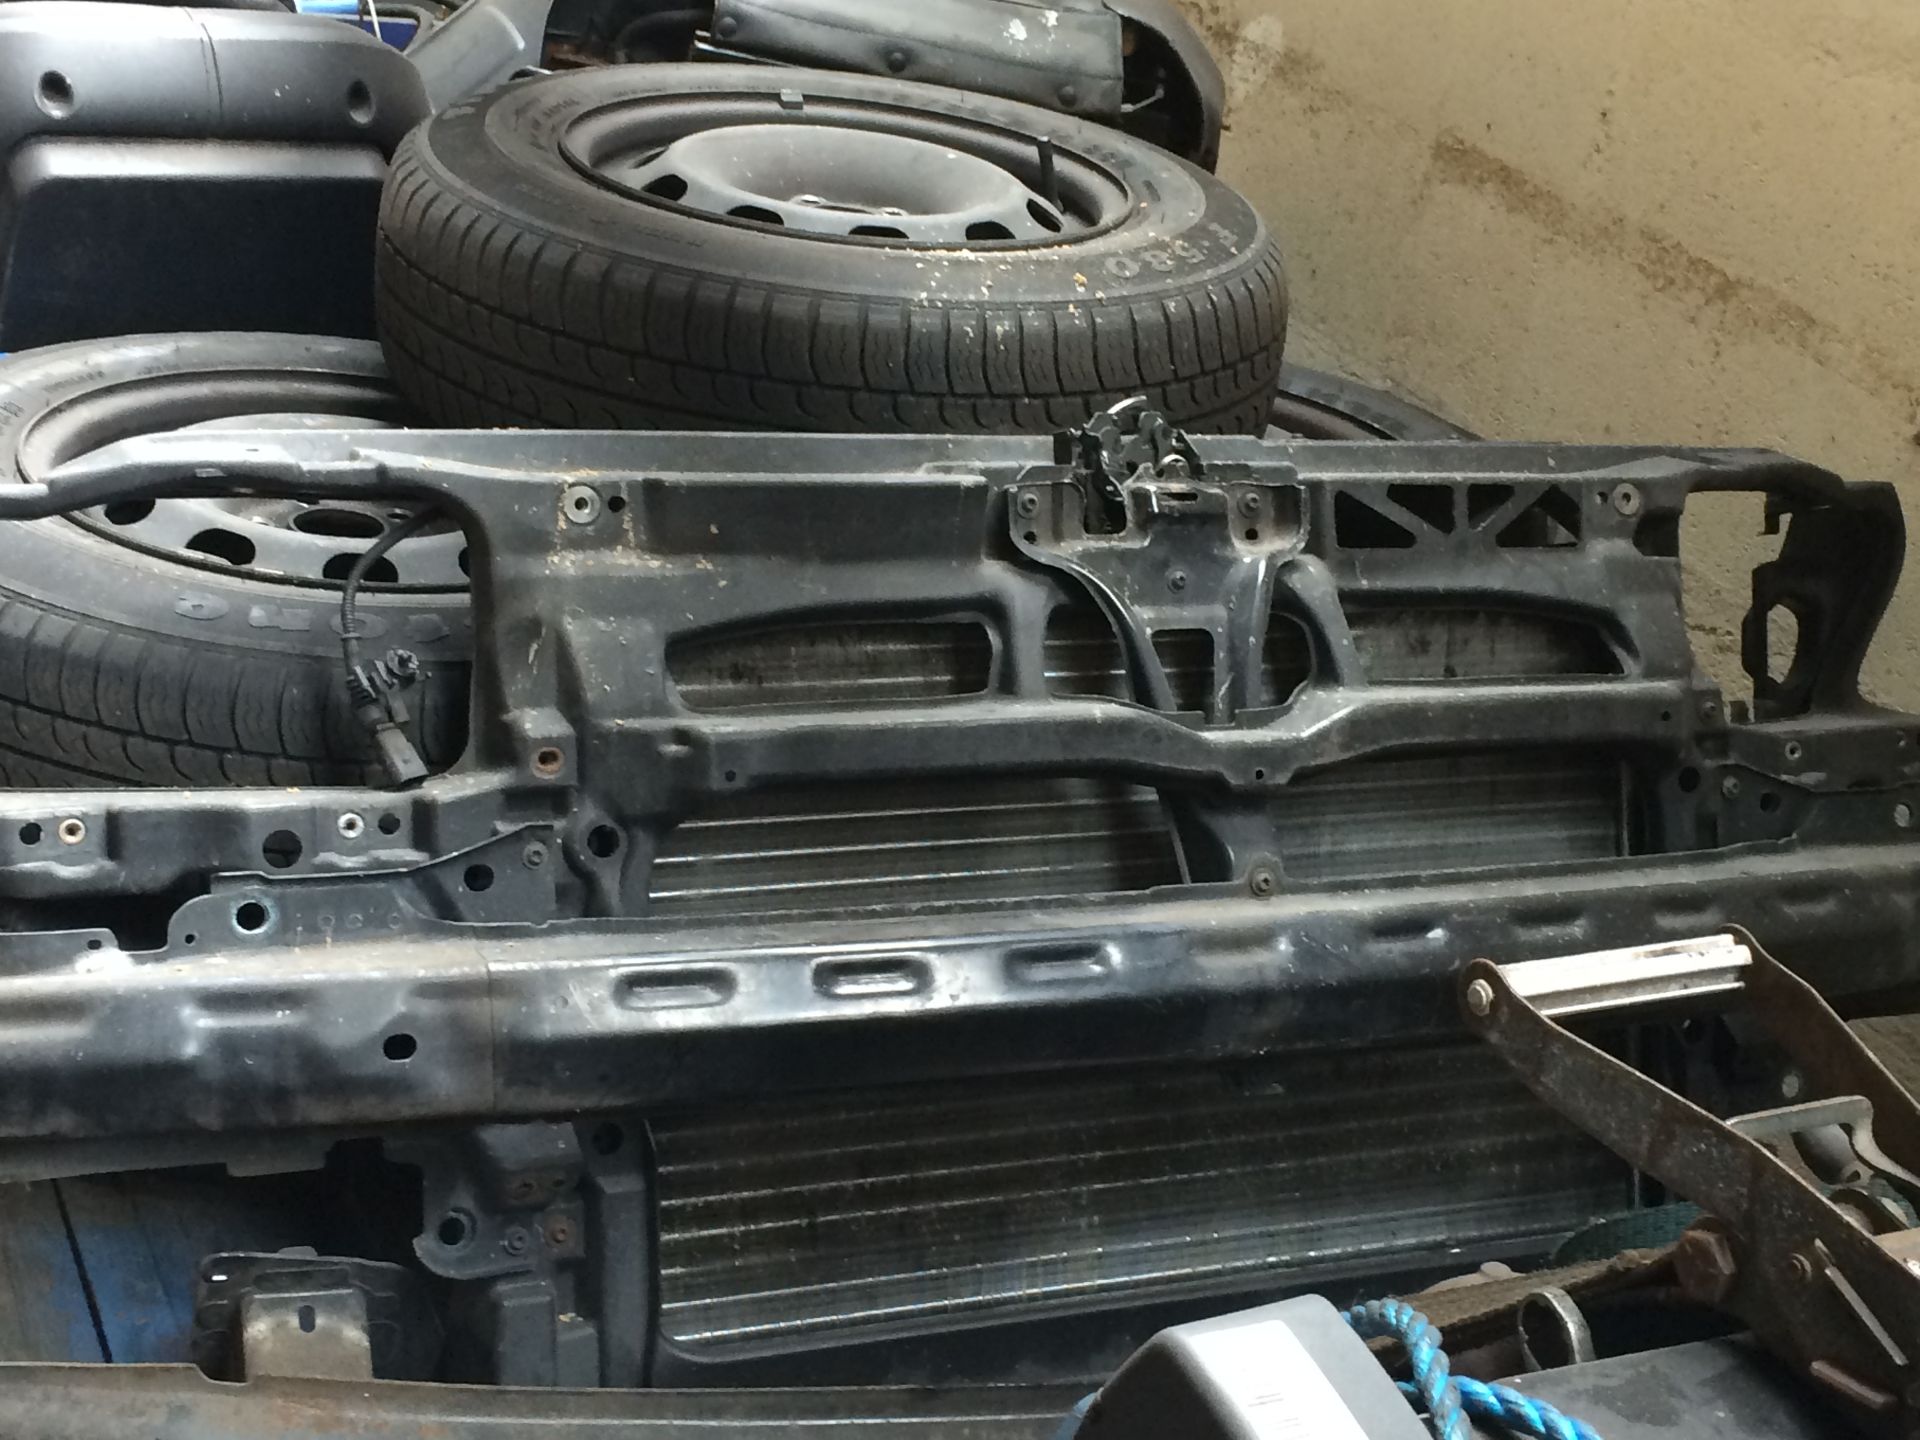 VW golf match mk4 Parts 1.6SR 5door steel wheels grey interior - Image 2 of 7